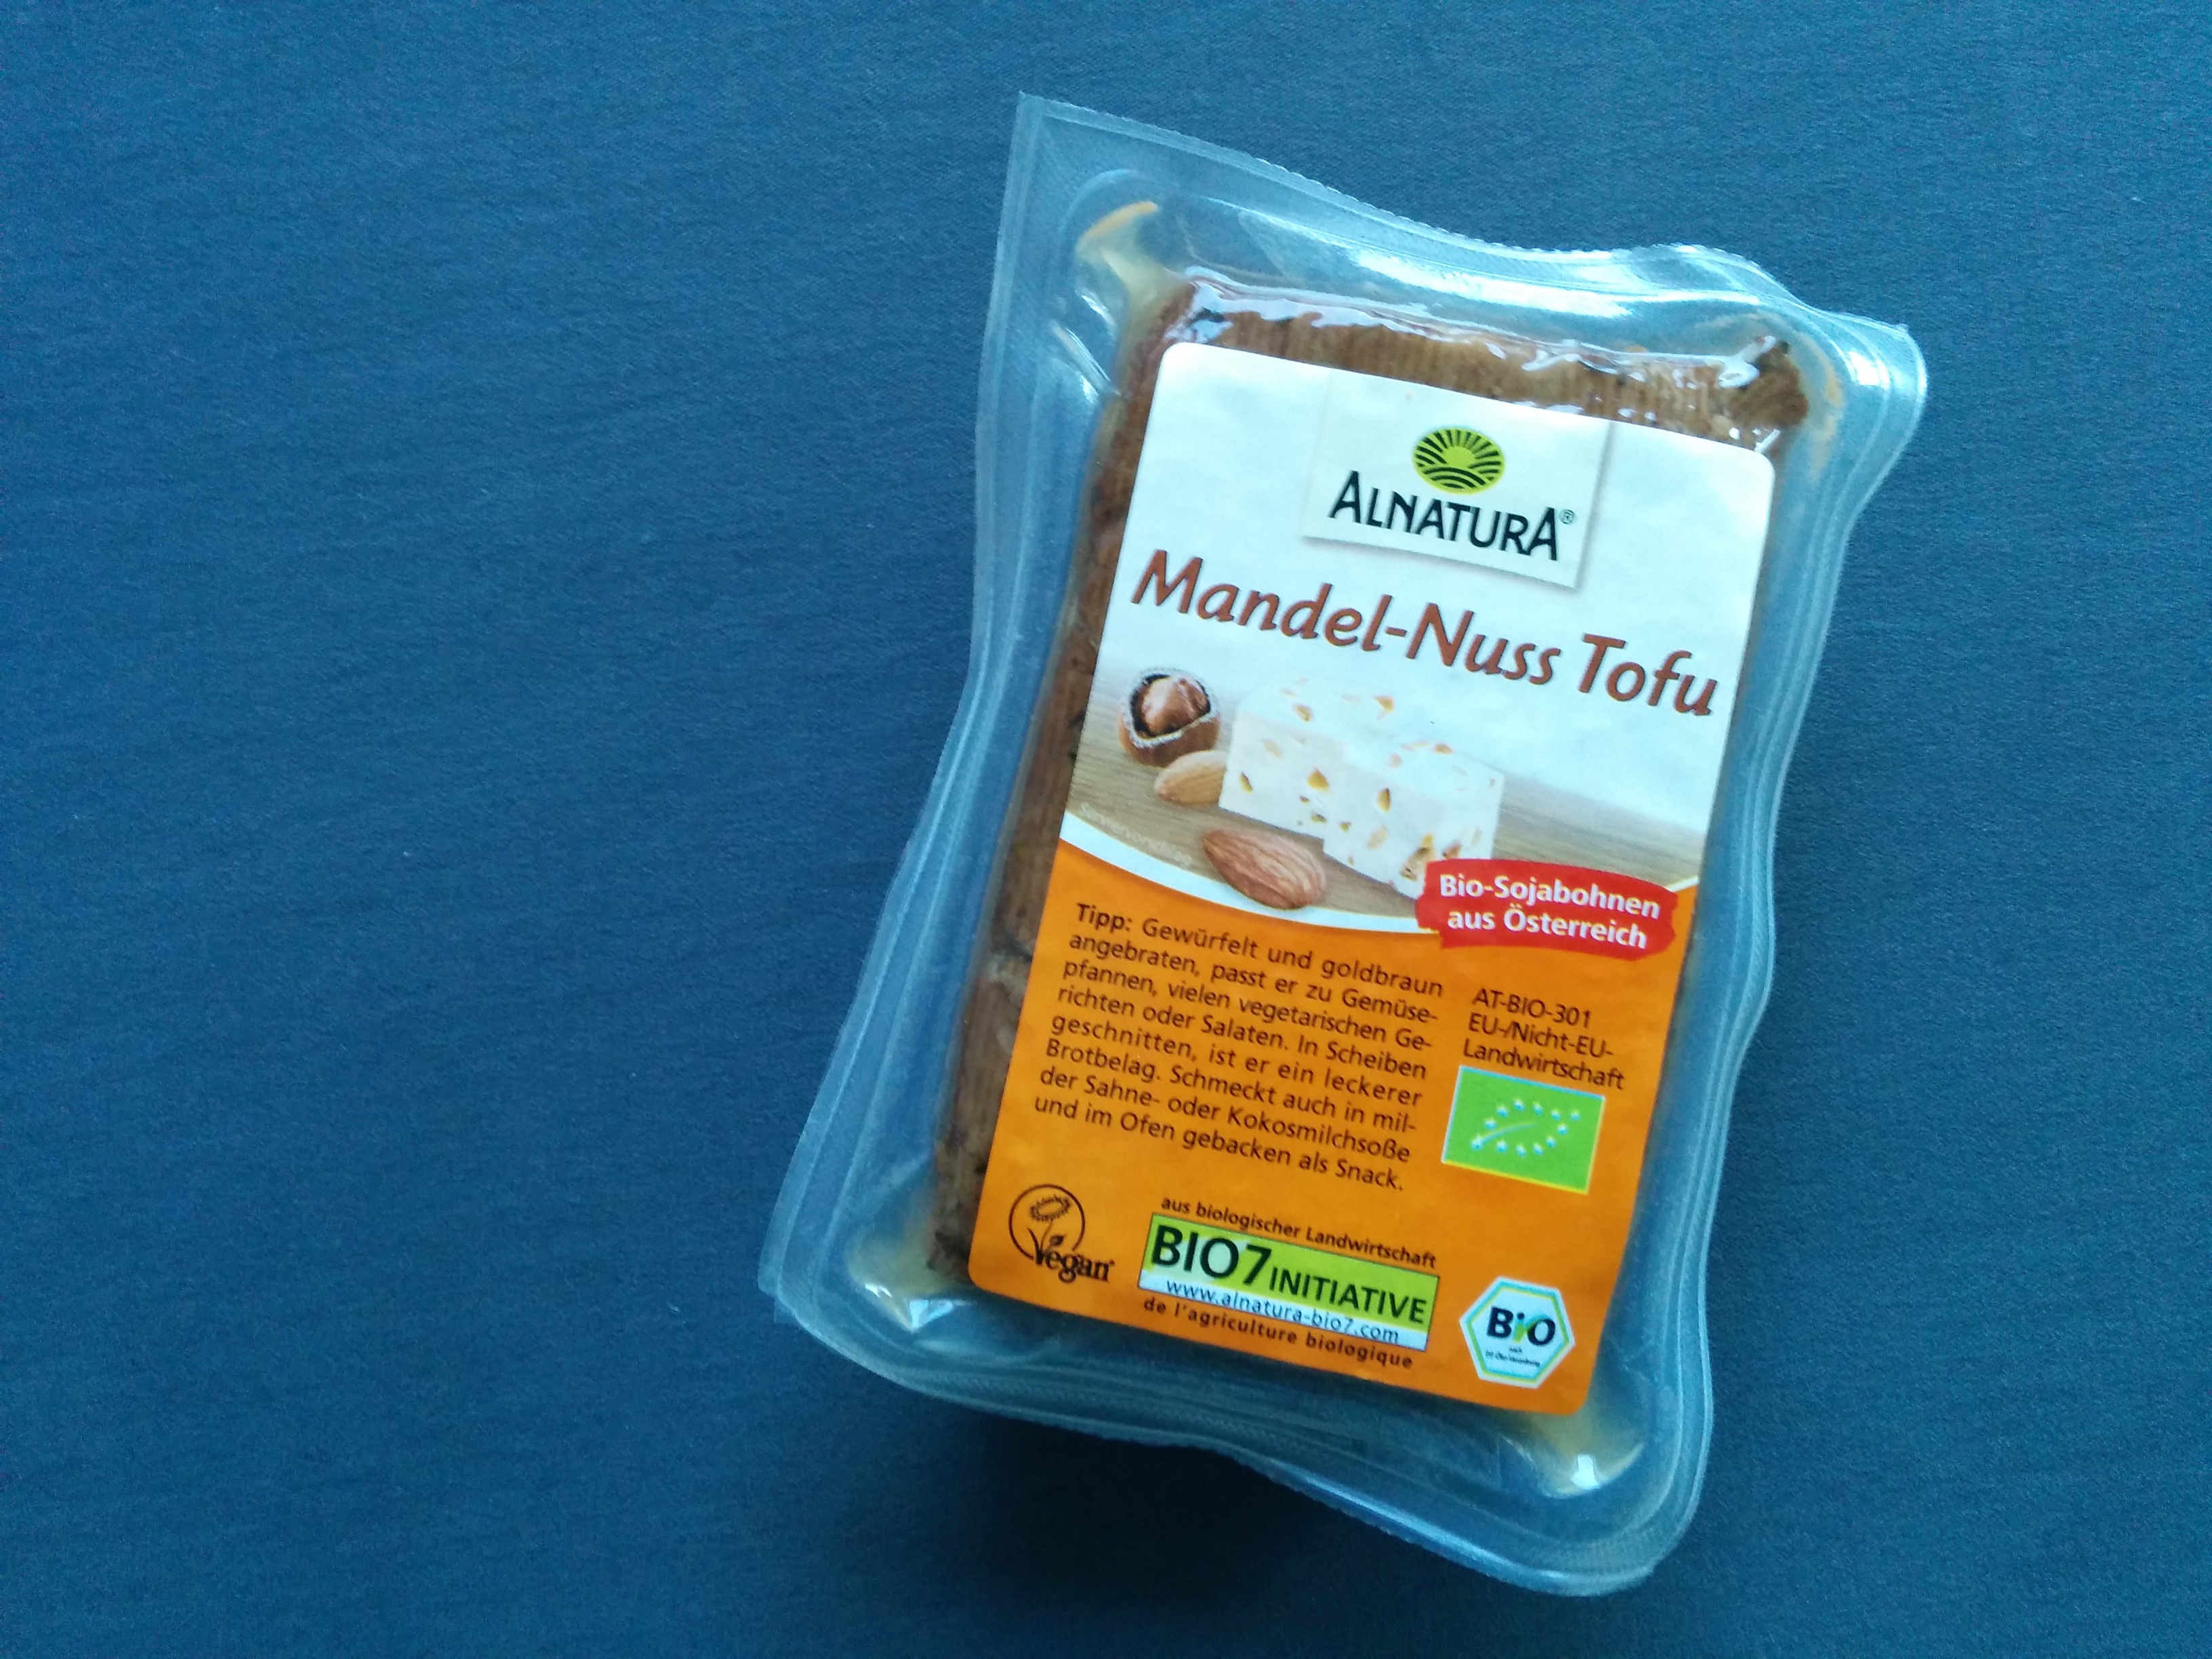 Alnatura Mandel-Nuss Tofu - Seems Incredible